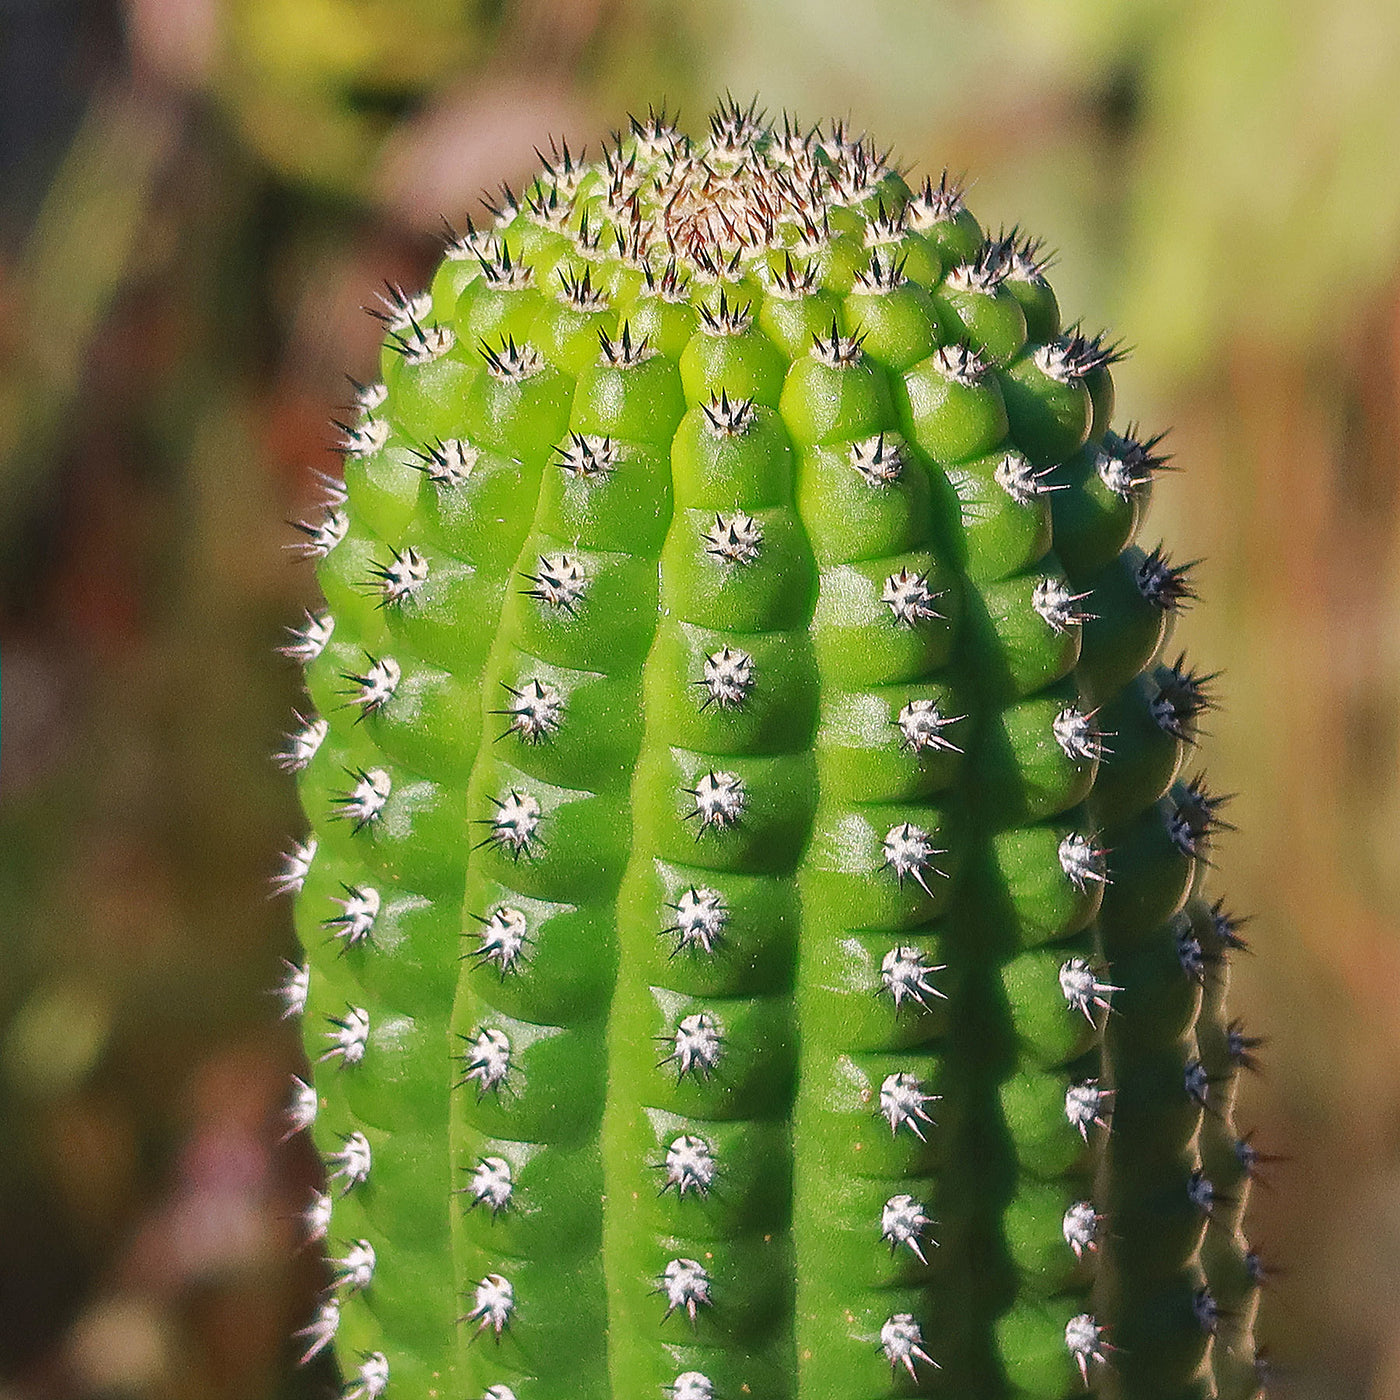 Indian Comb Cactus - Trichocereus brevispinulosus